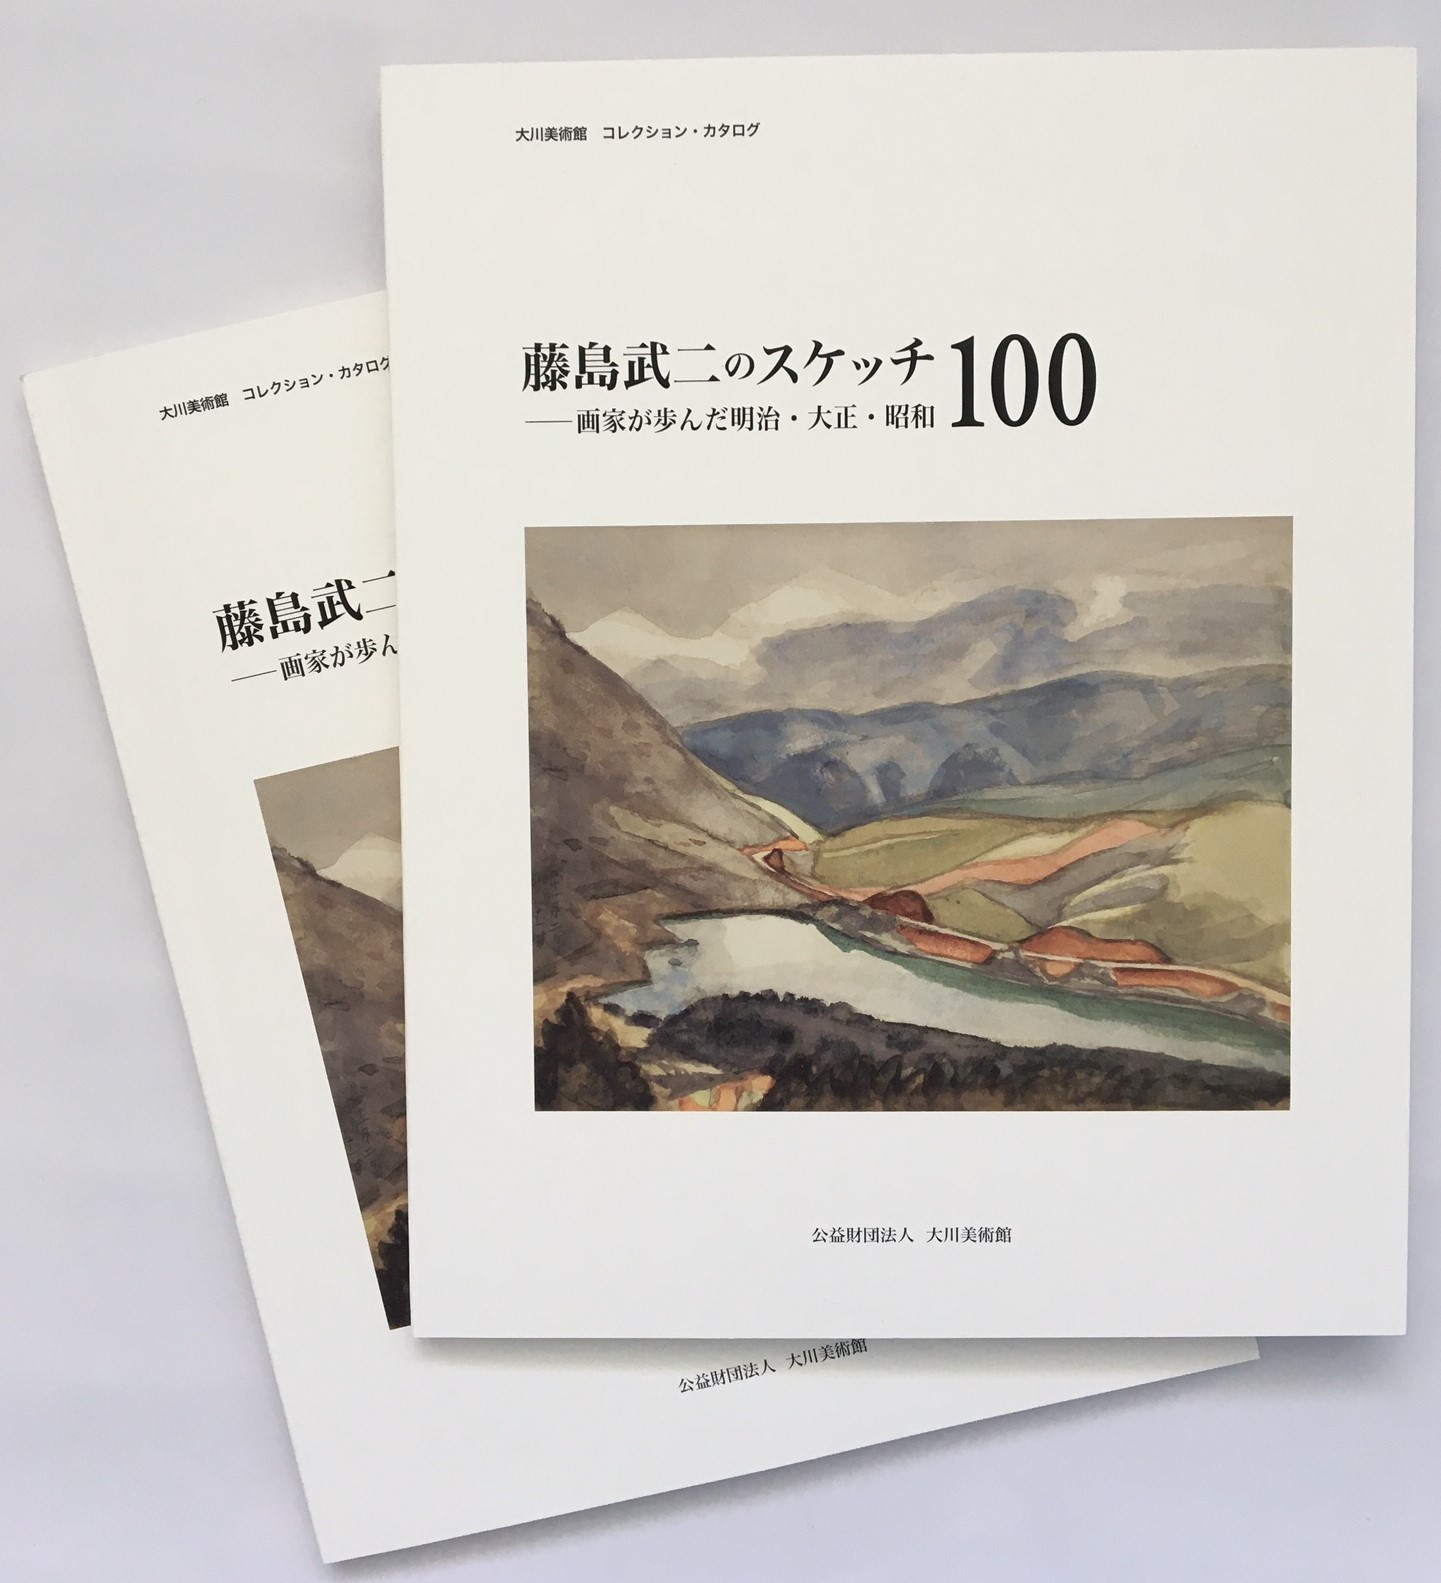 
コレクションカタログ
「藤島武二のスケッチ100
　－画家が歩んだ明治・大正
　・昭和」の刊行のお知らせです
